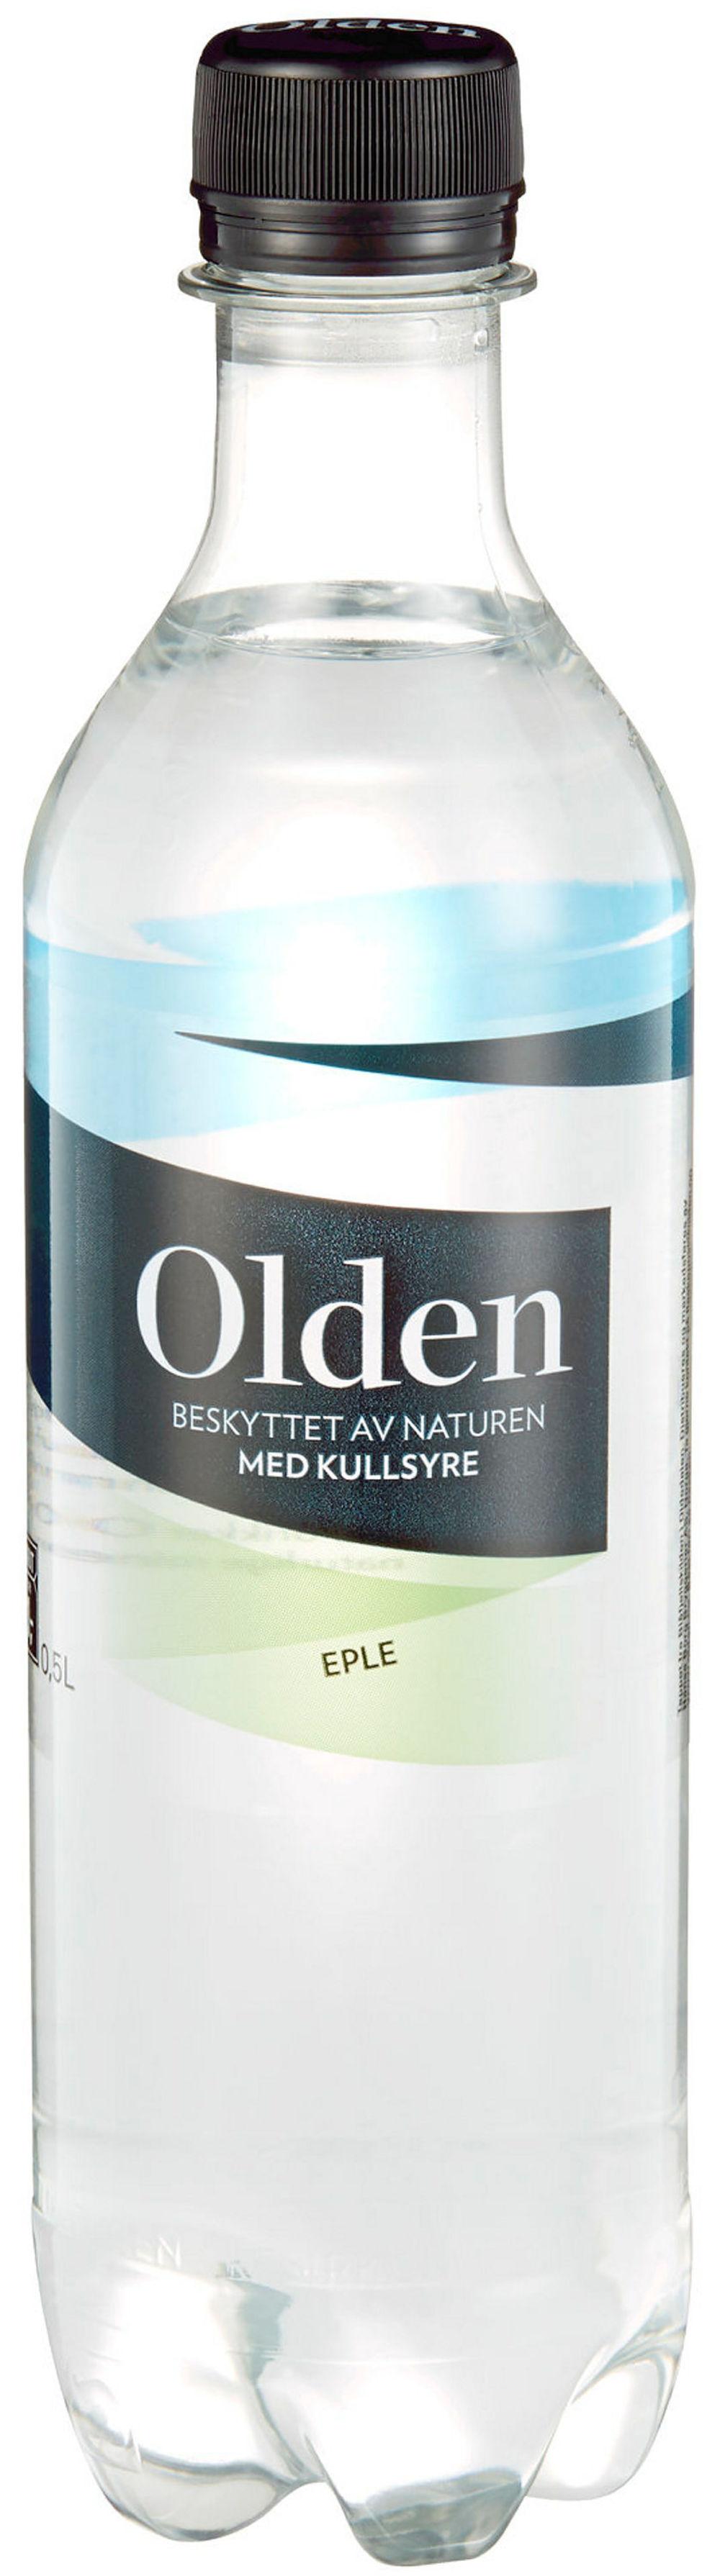 Olden Eple Med Kullsyre, 0,5 l